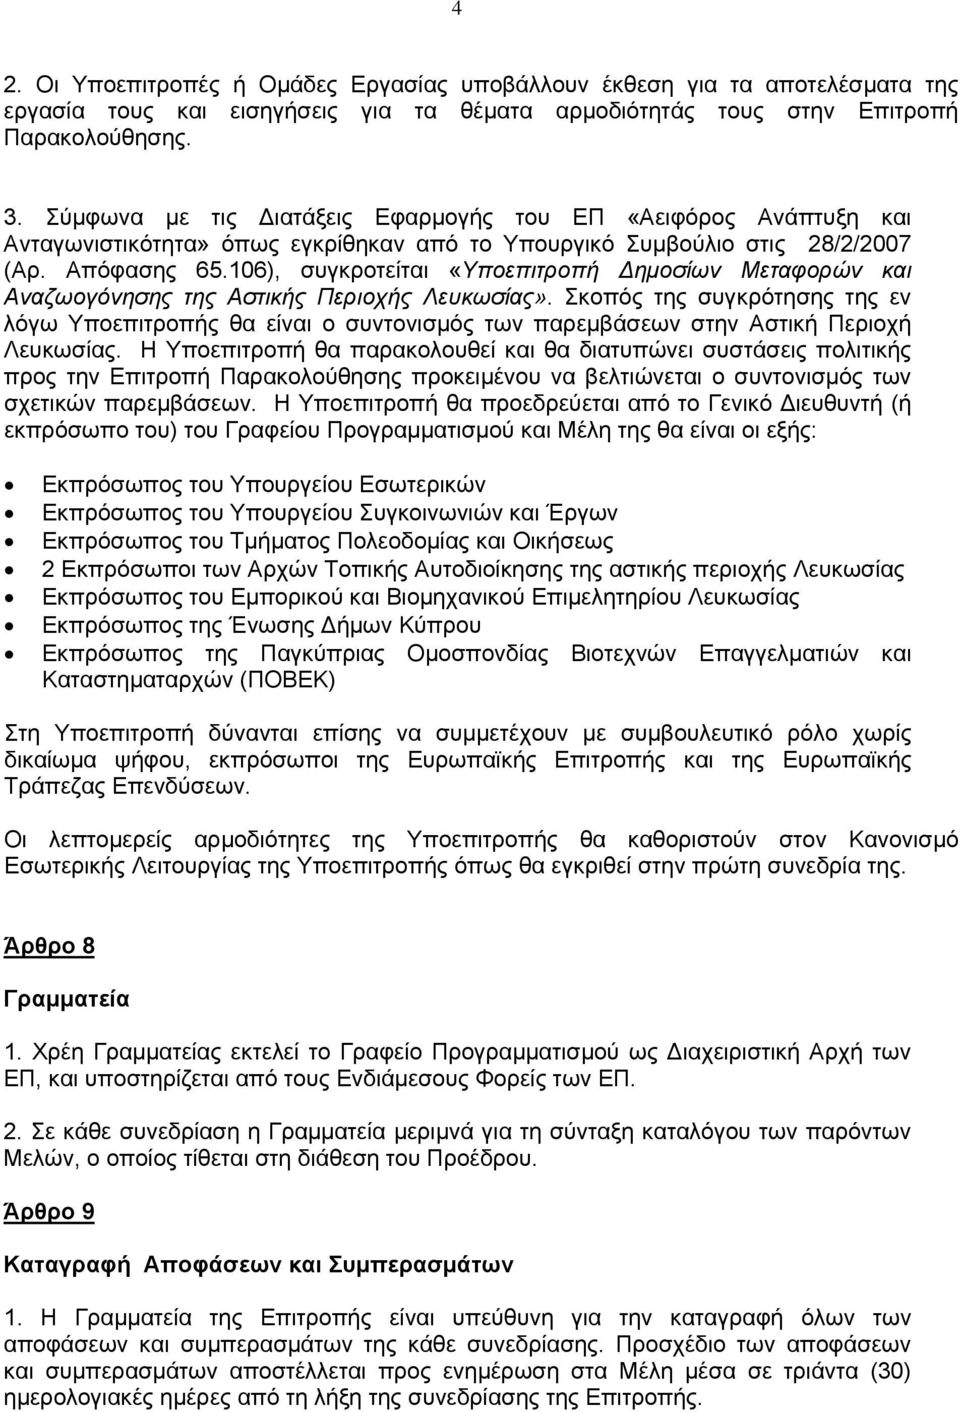 106), συγκροτείται «Υποεπιτροπή Δημοσίων Μεταφορών και Αναζωογόνησης της Αστικής Περιοχής Λευκωσίας».